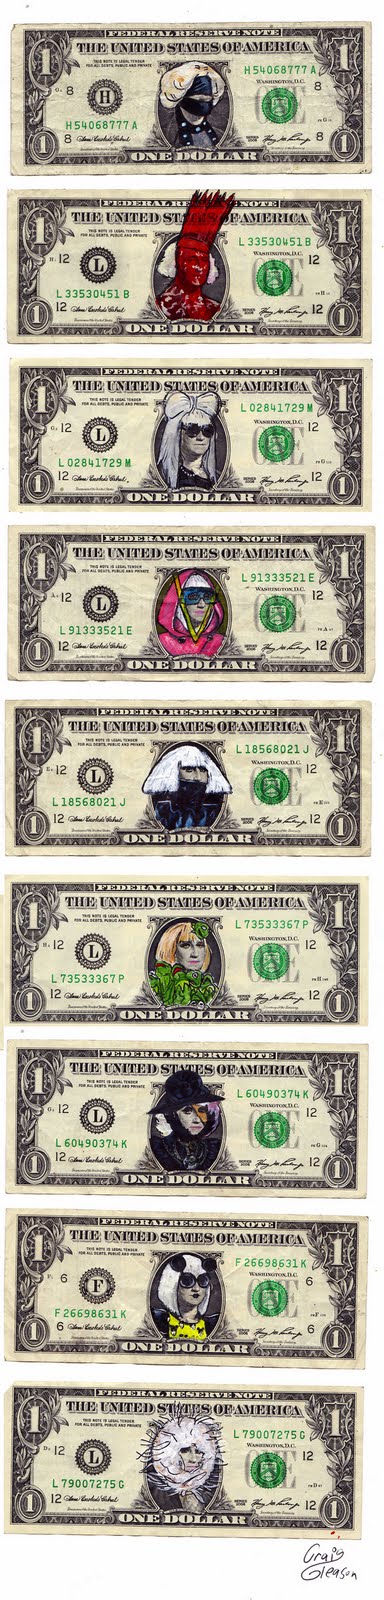 dollar bill art. These dollar bills by Craig